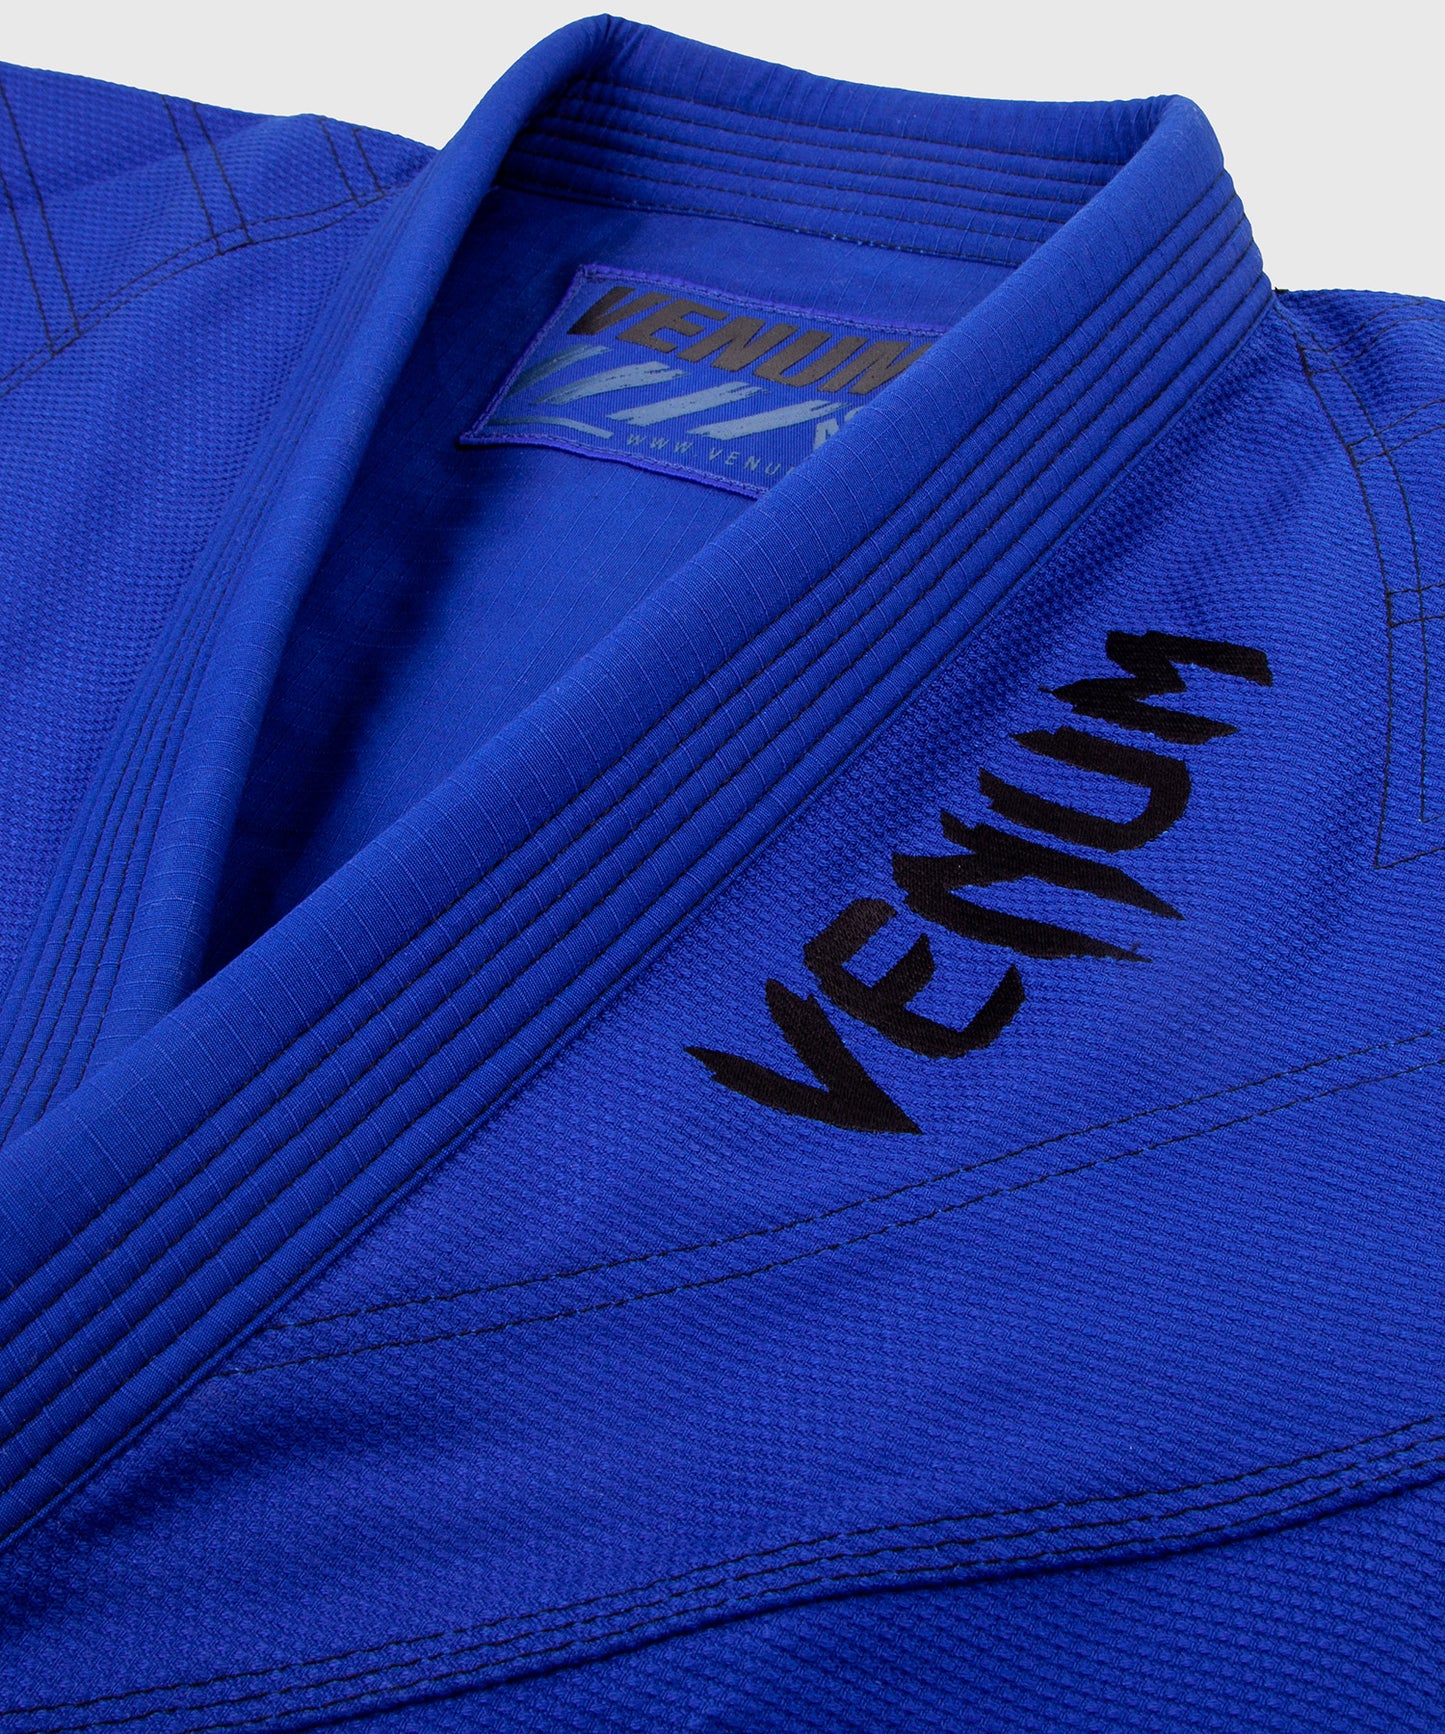 Kimono de JJB Venum Power 2.0 Light - Bleu